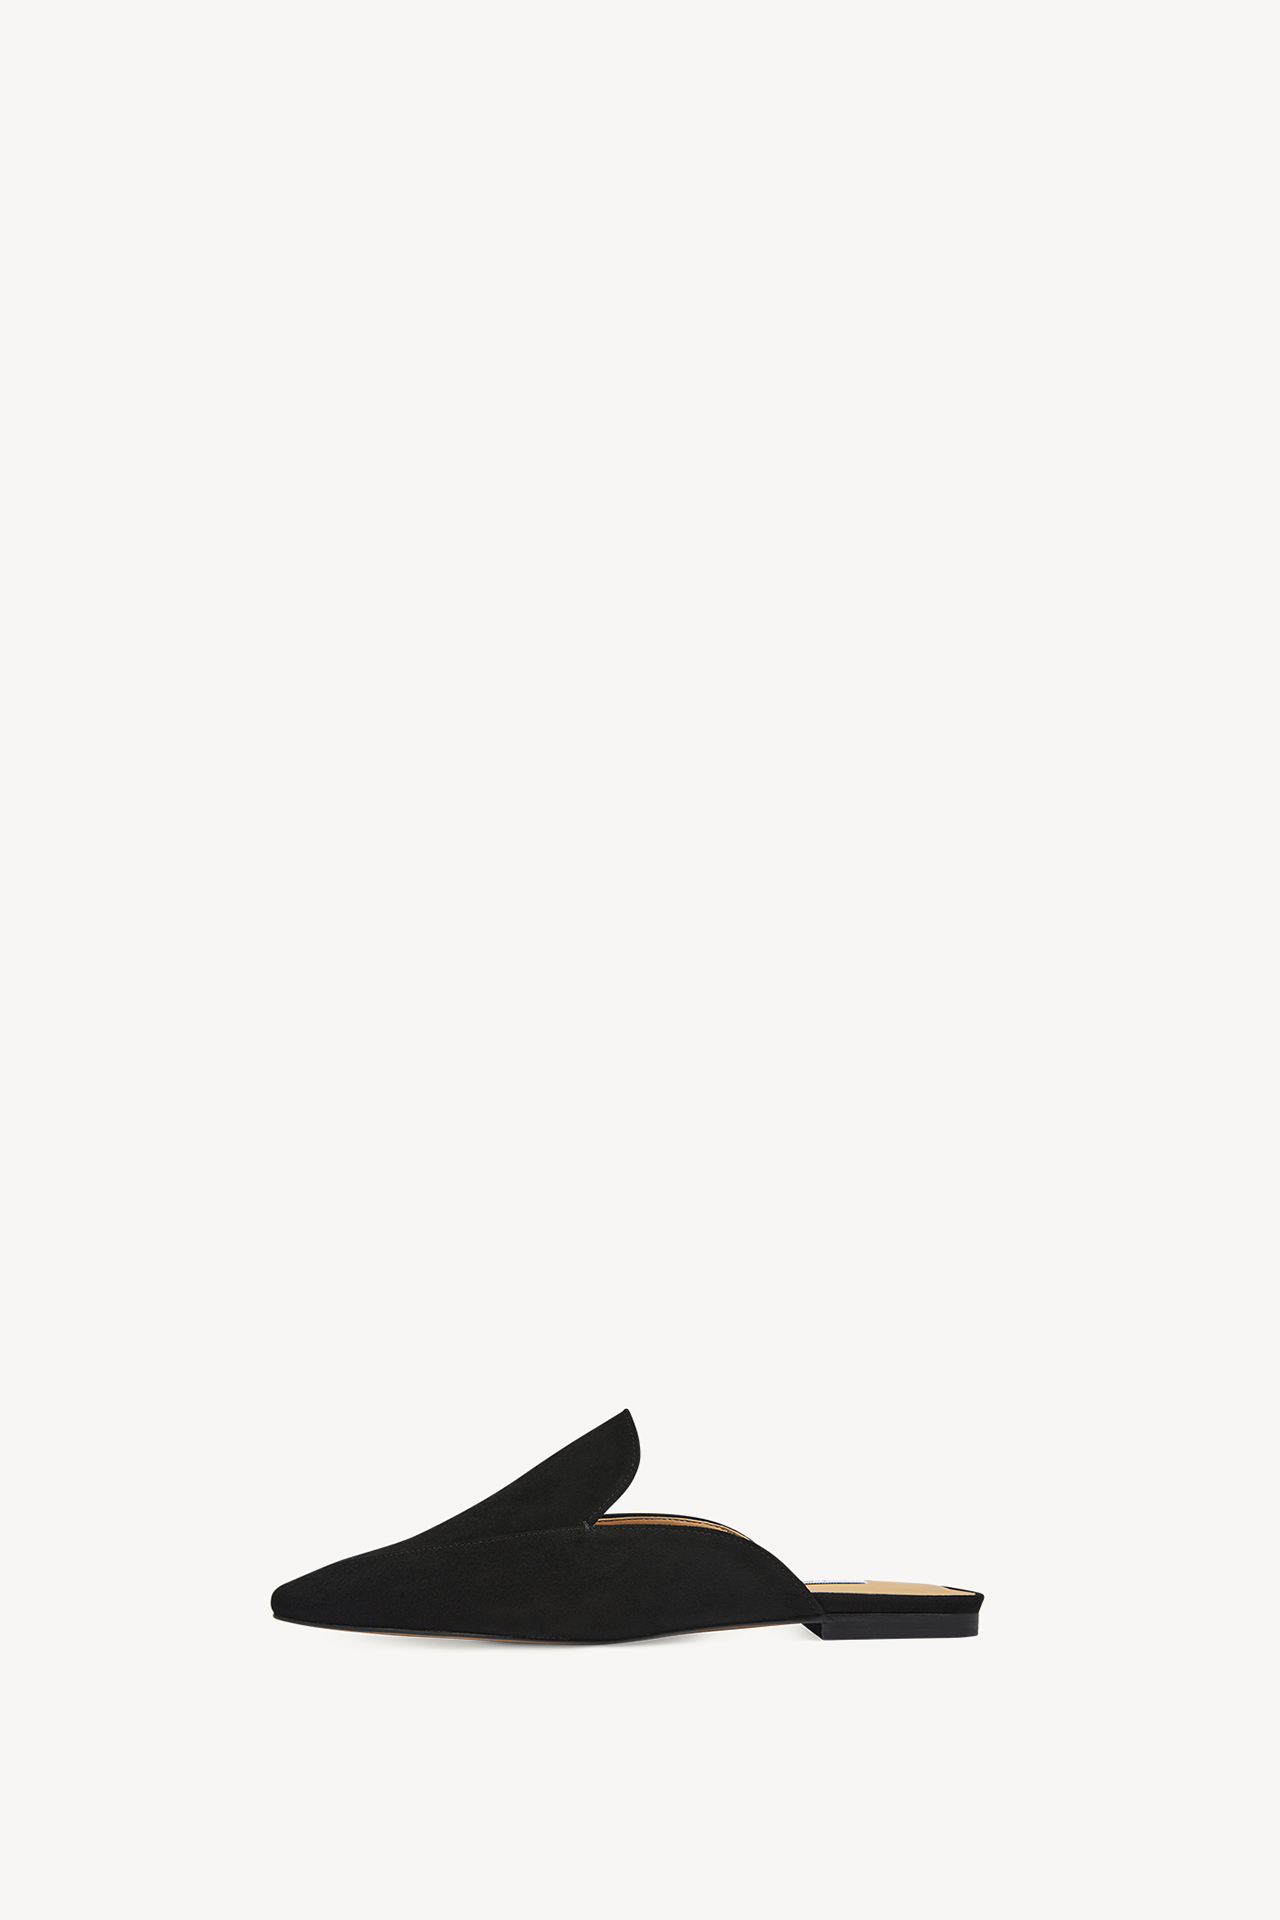 [鞋子] 女性风筒 - 黑色